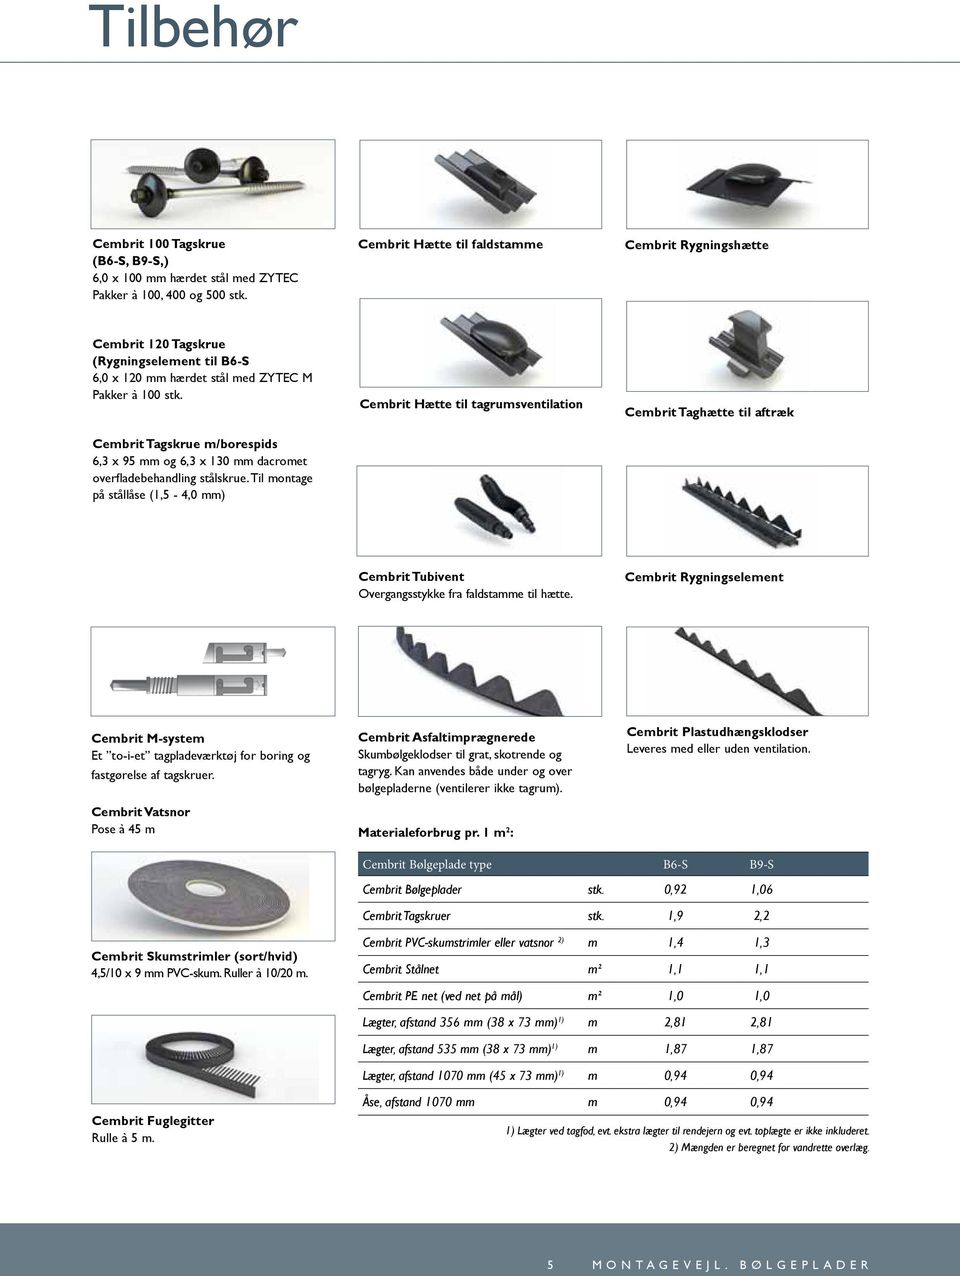 Cembrit Tagskrue m/borespids 6,3 x 95 mm og 6,3 x 130 mm dacromet overfladebehandling stålskrue.